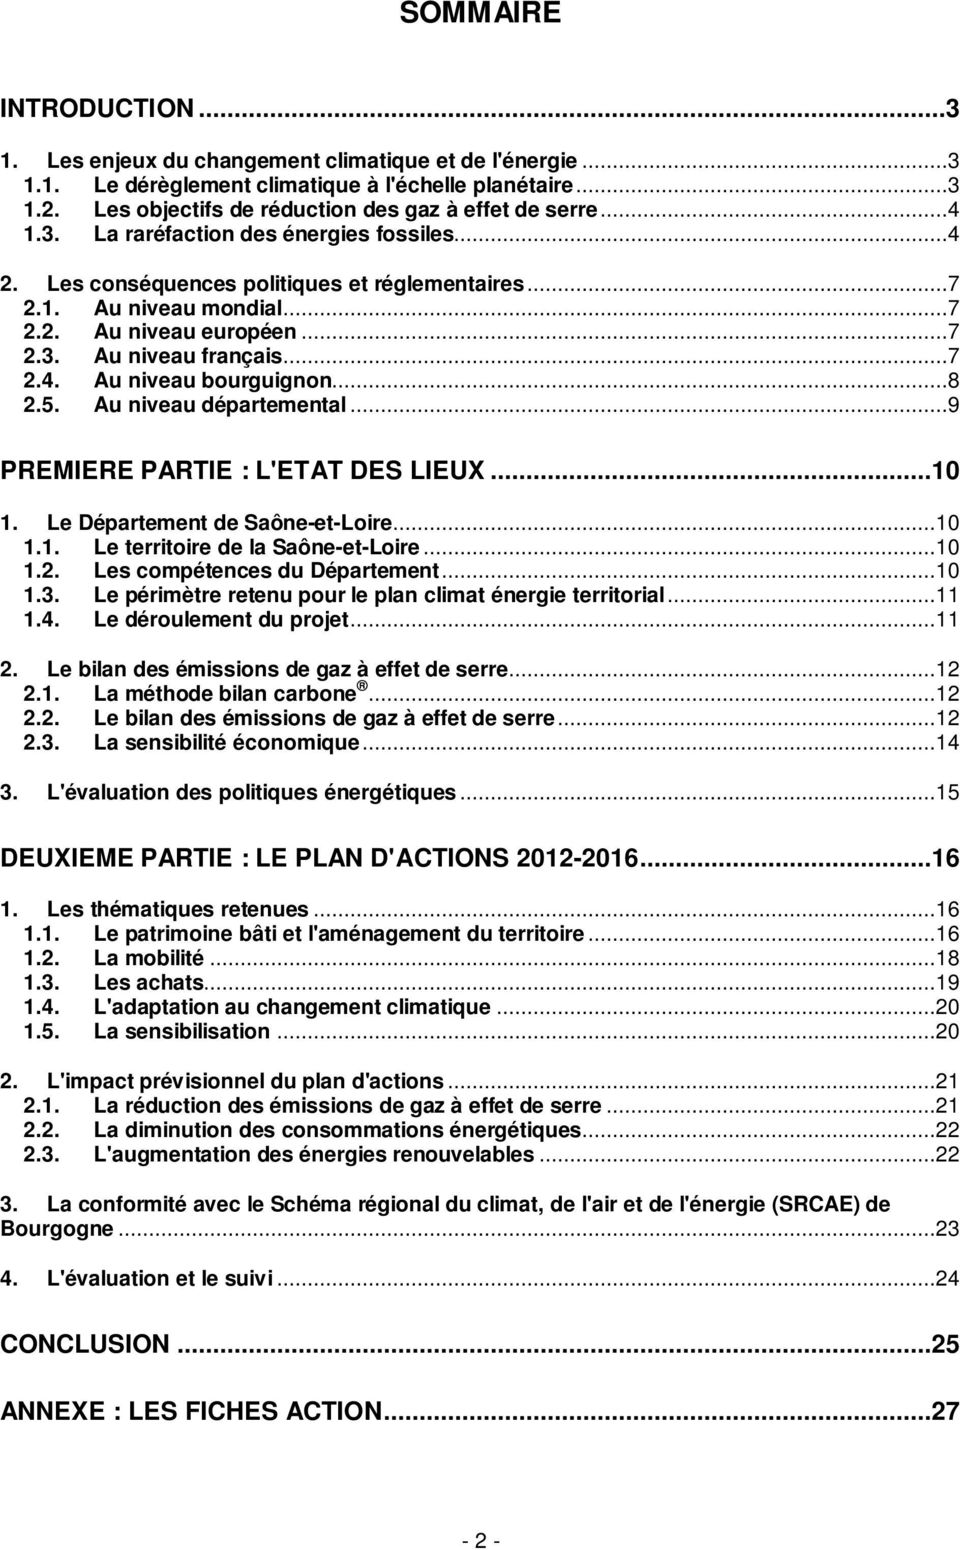 ..8 2.5. Au niveau départemental...9 PREMIERE PARTIE : L'ETAT DES LIEUX...10 1. Le Département de Saône-et-Loire...10 1.1. Le territoire de la Saône-et-Loire...10 1.2. Les compétences du Département.